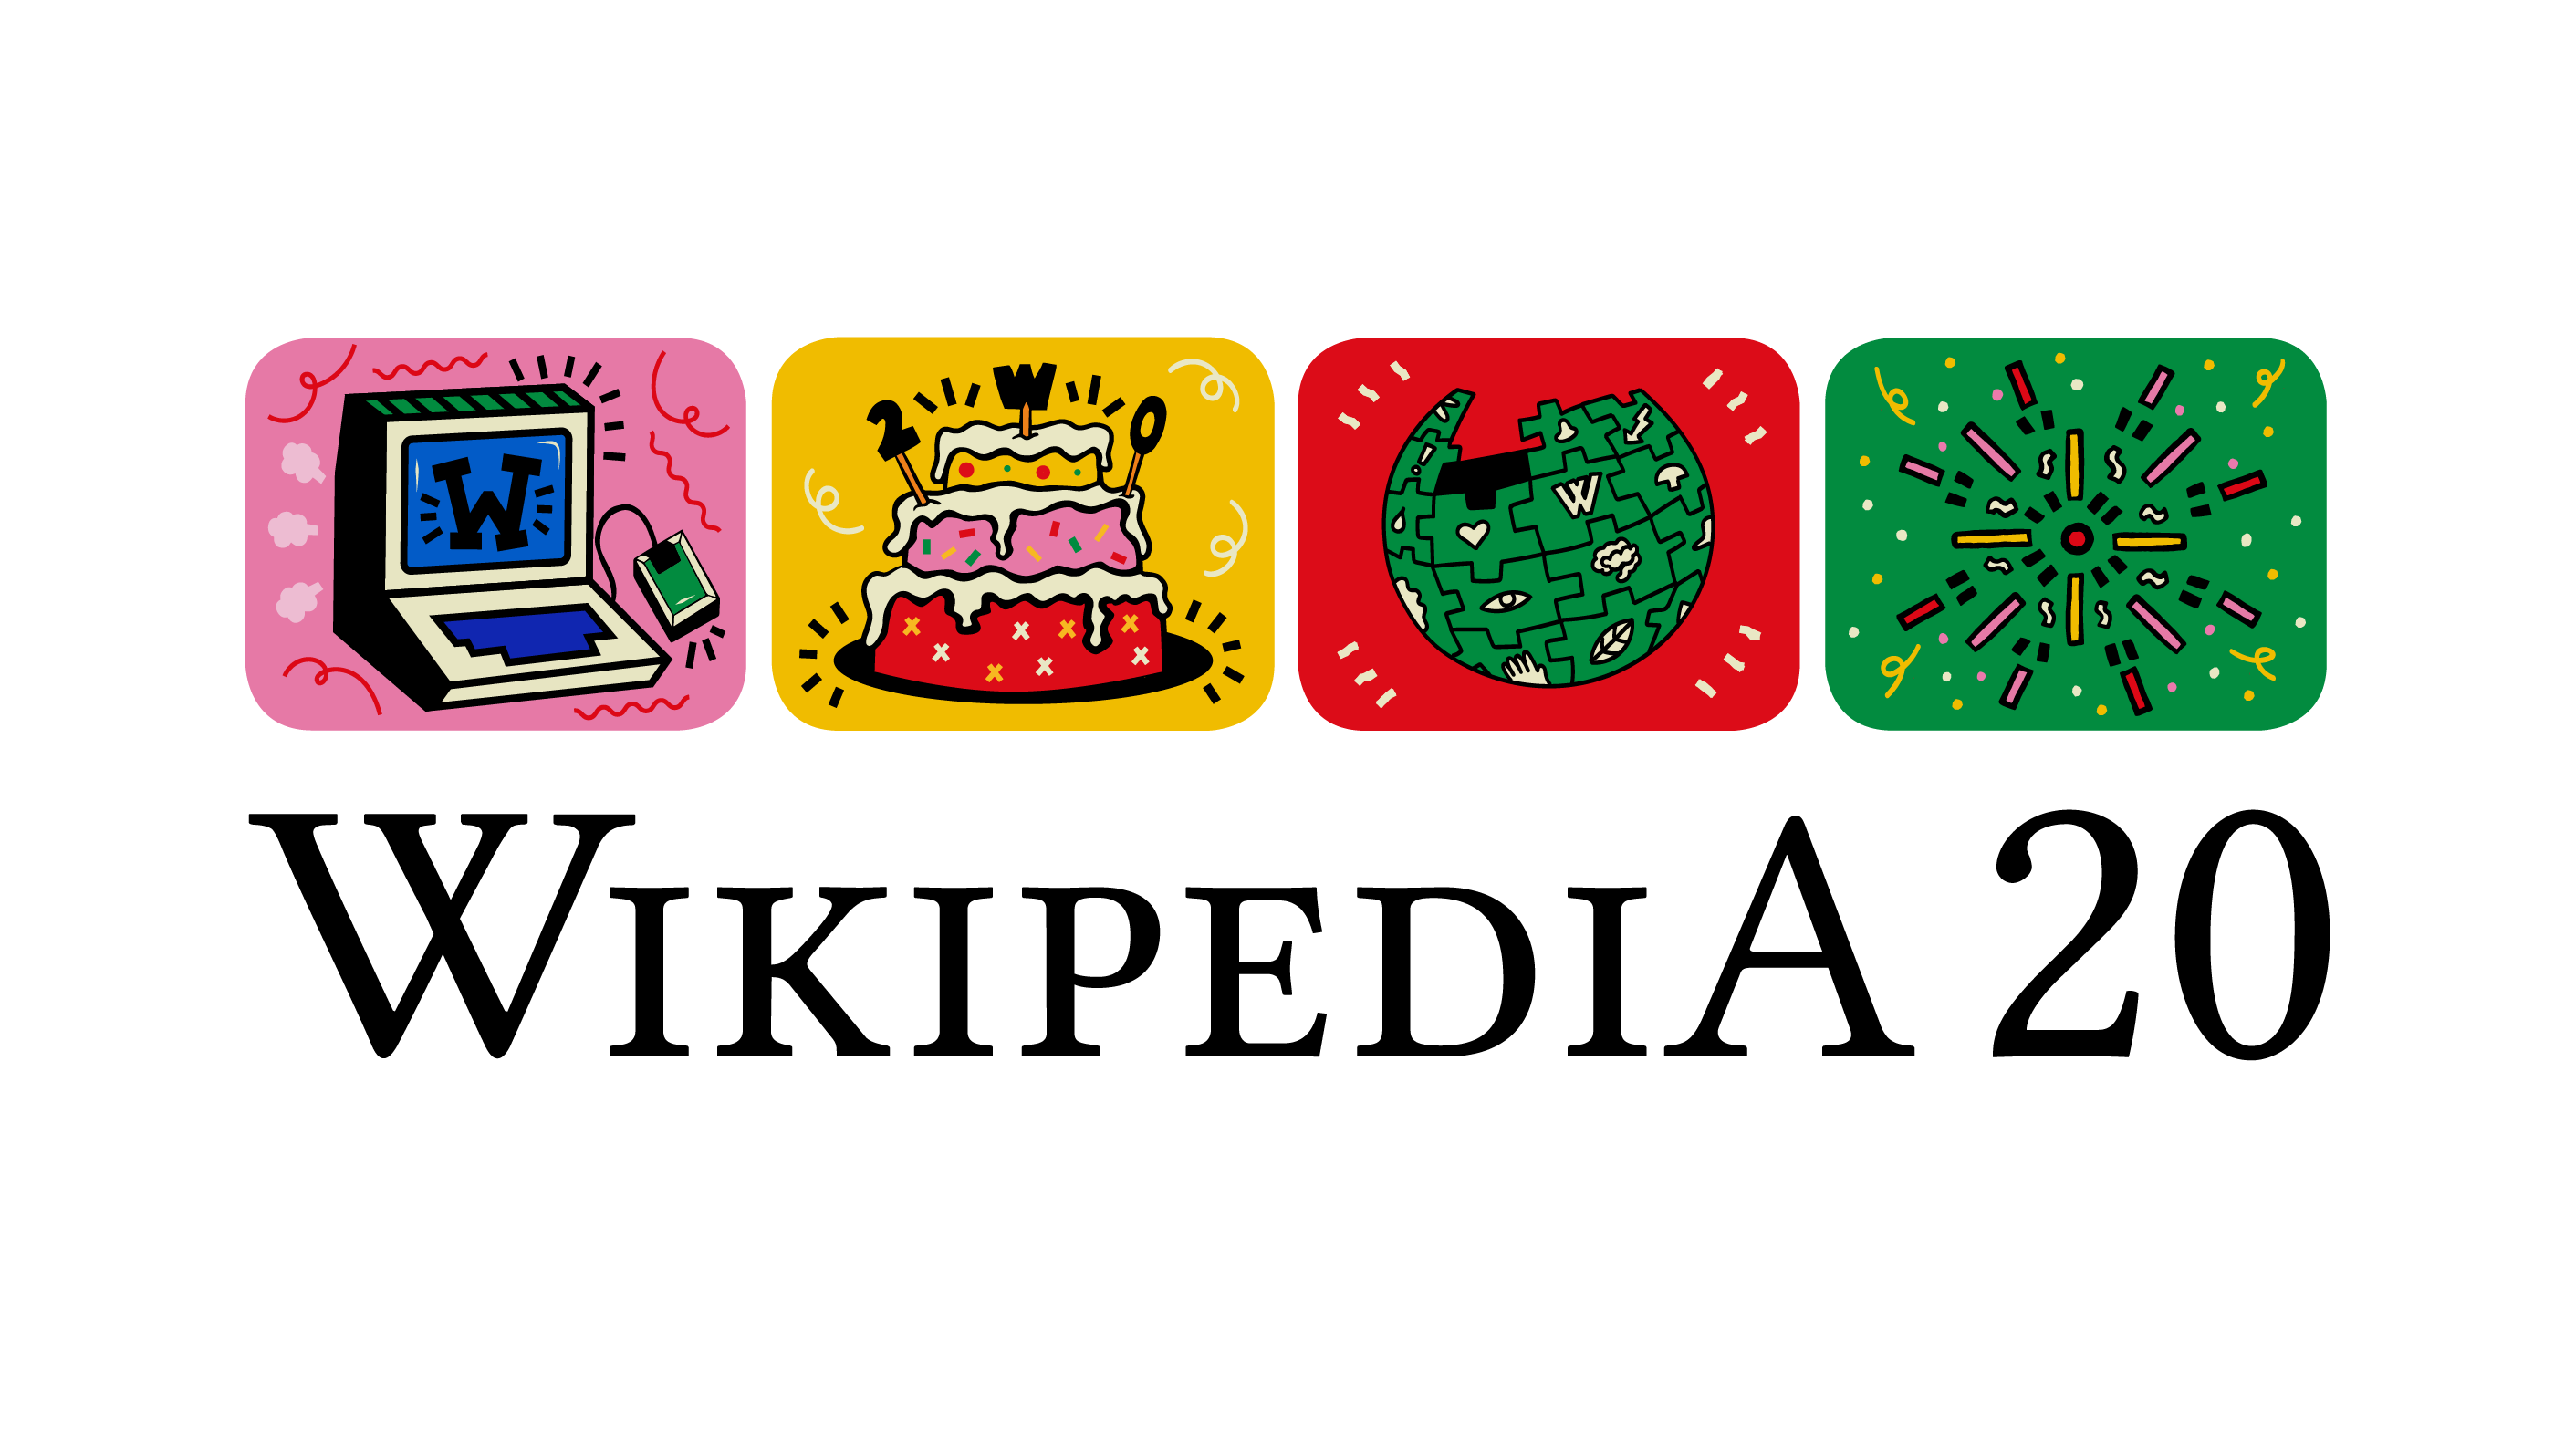 Википедия празднует 20-летие